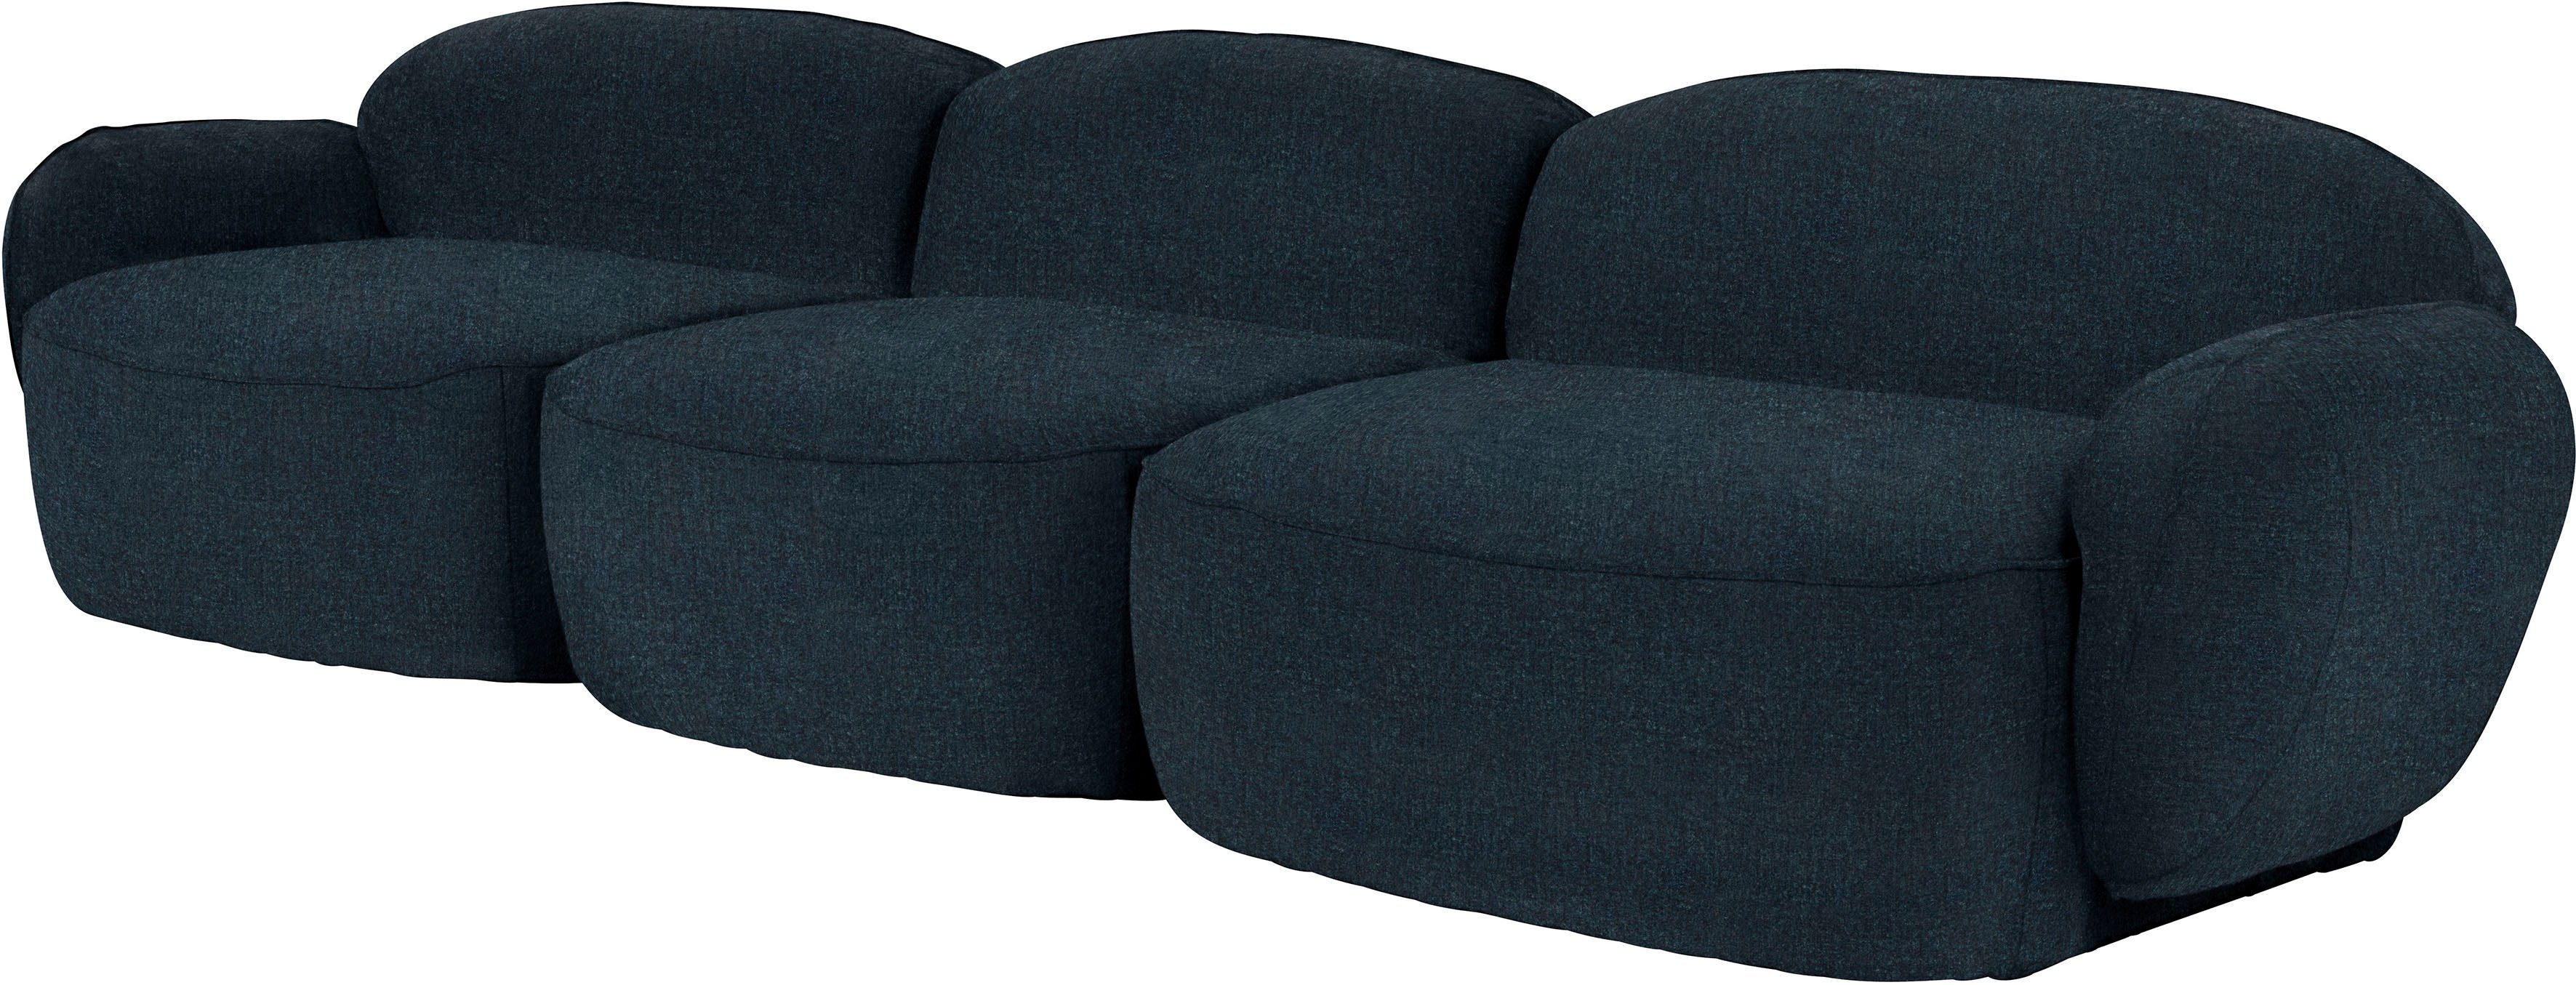 furninova 3,5-Sitzer Bubble, komfortabel durch Design Memoryschaum, im skandinavischen